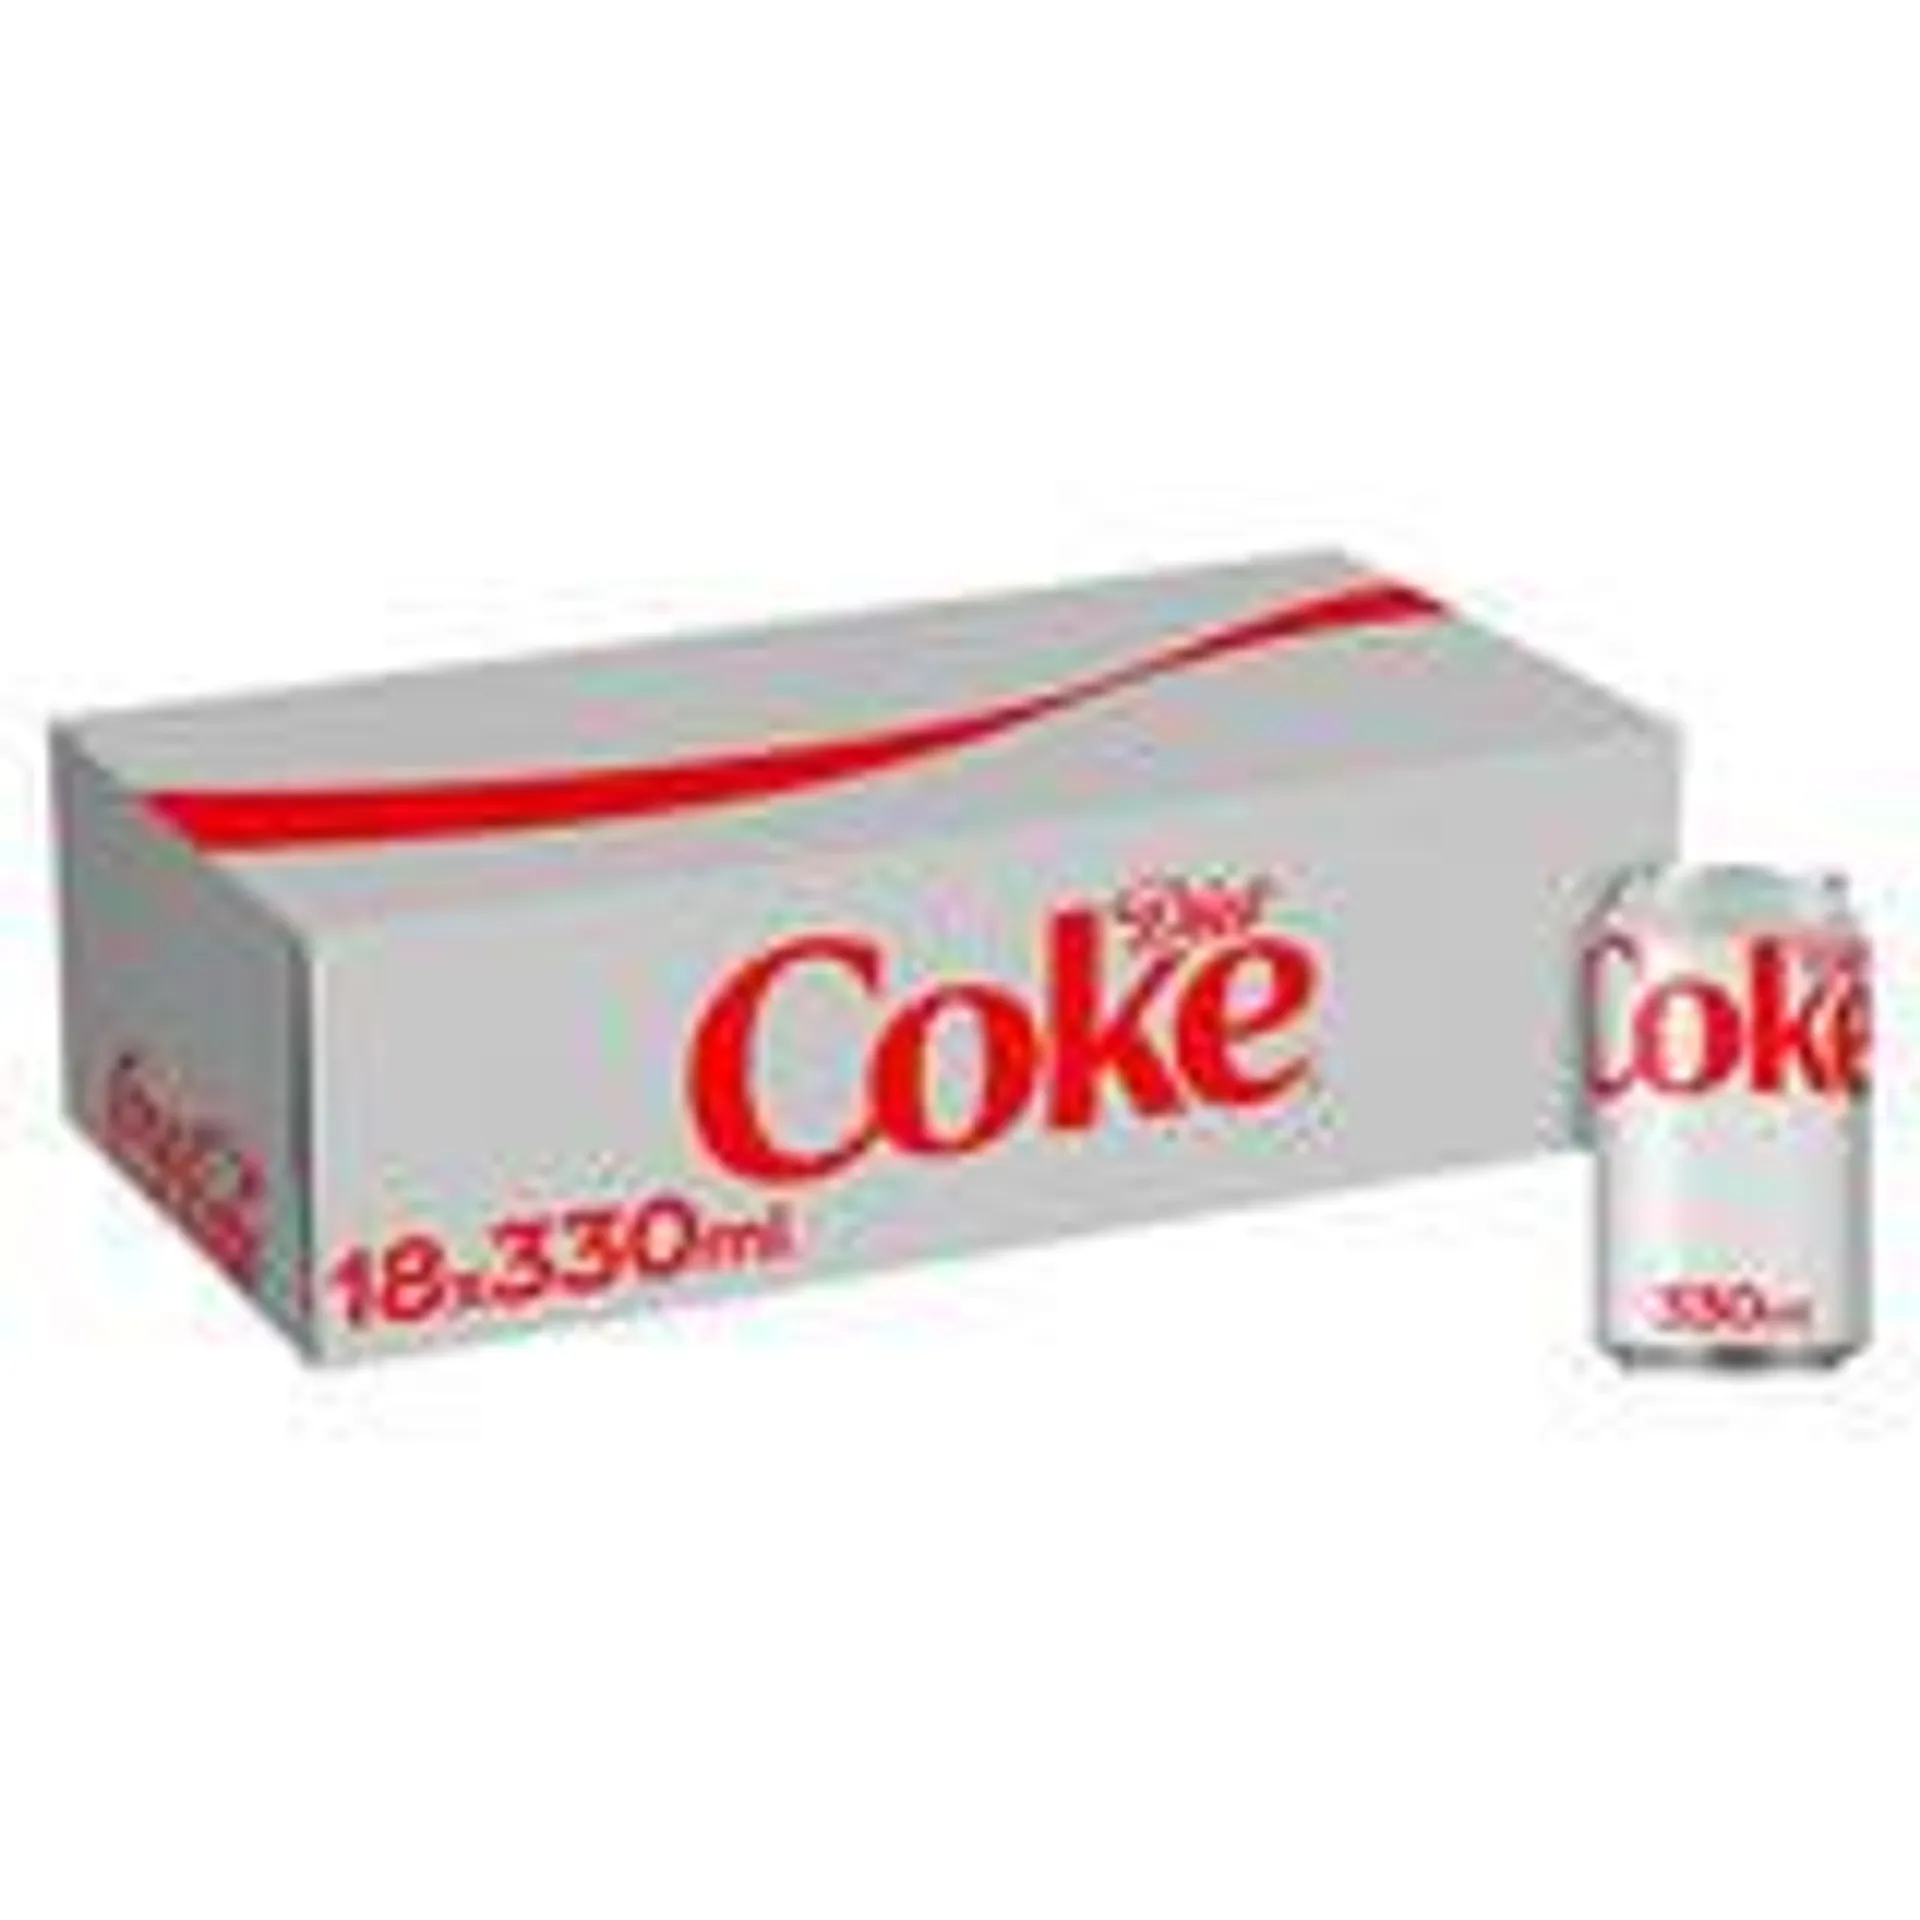 Diet Coke 18 x 330ml